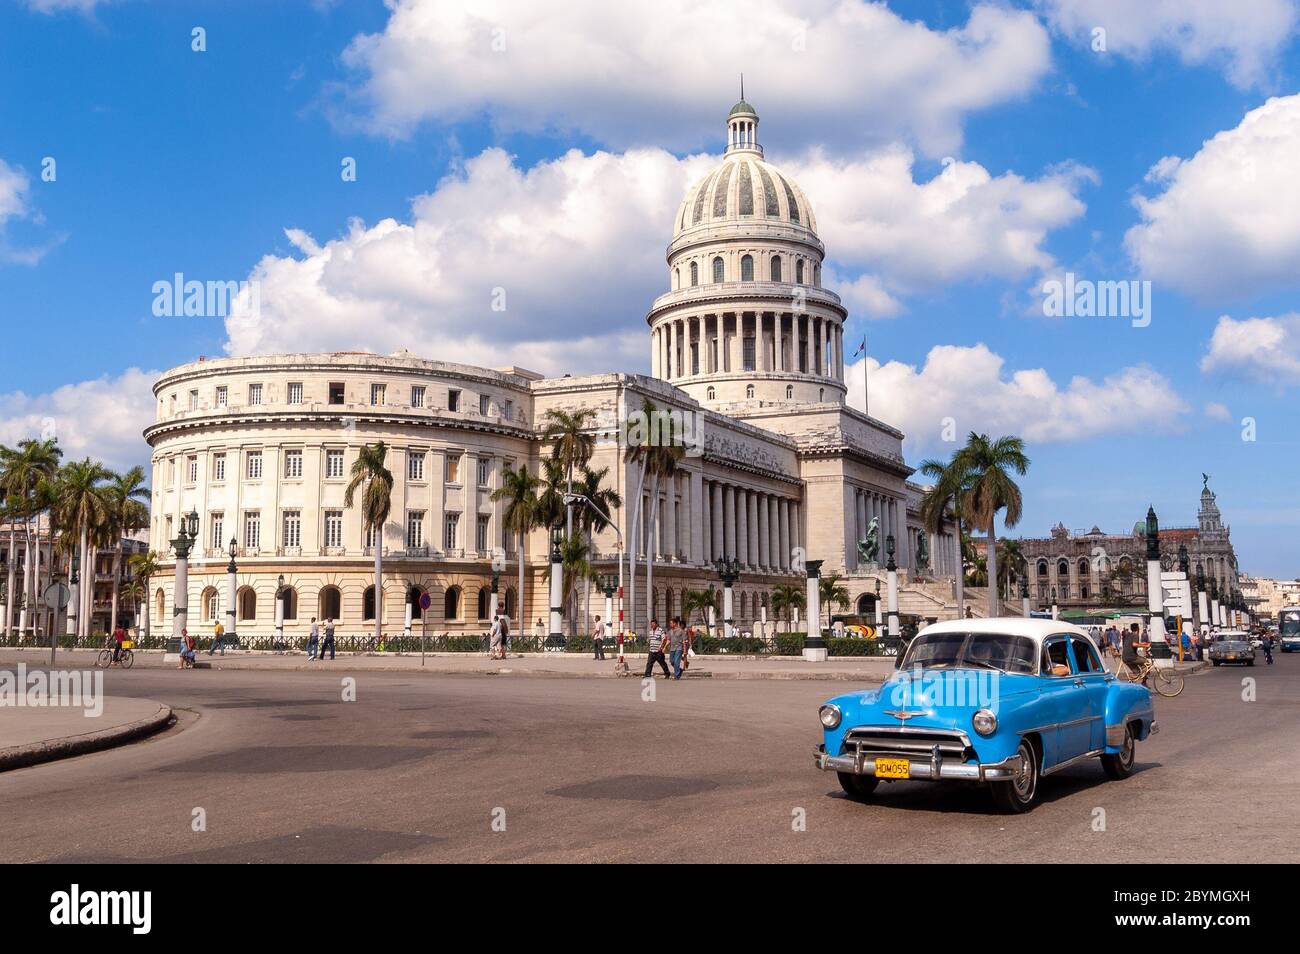 Coche clásico de época en frente del Capitolio, la Habana, Cuba Foto de stock